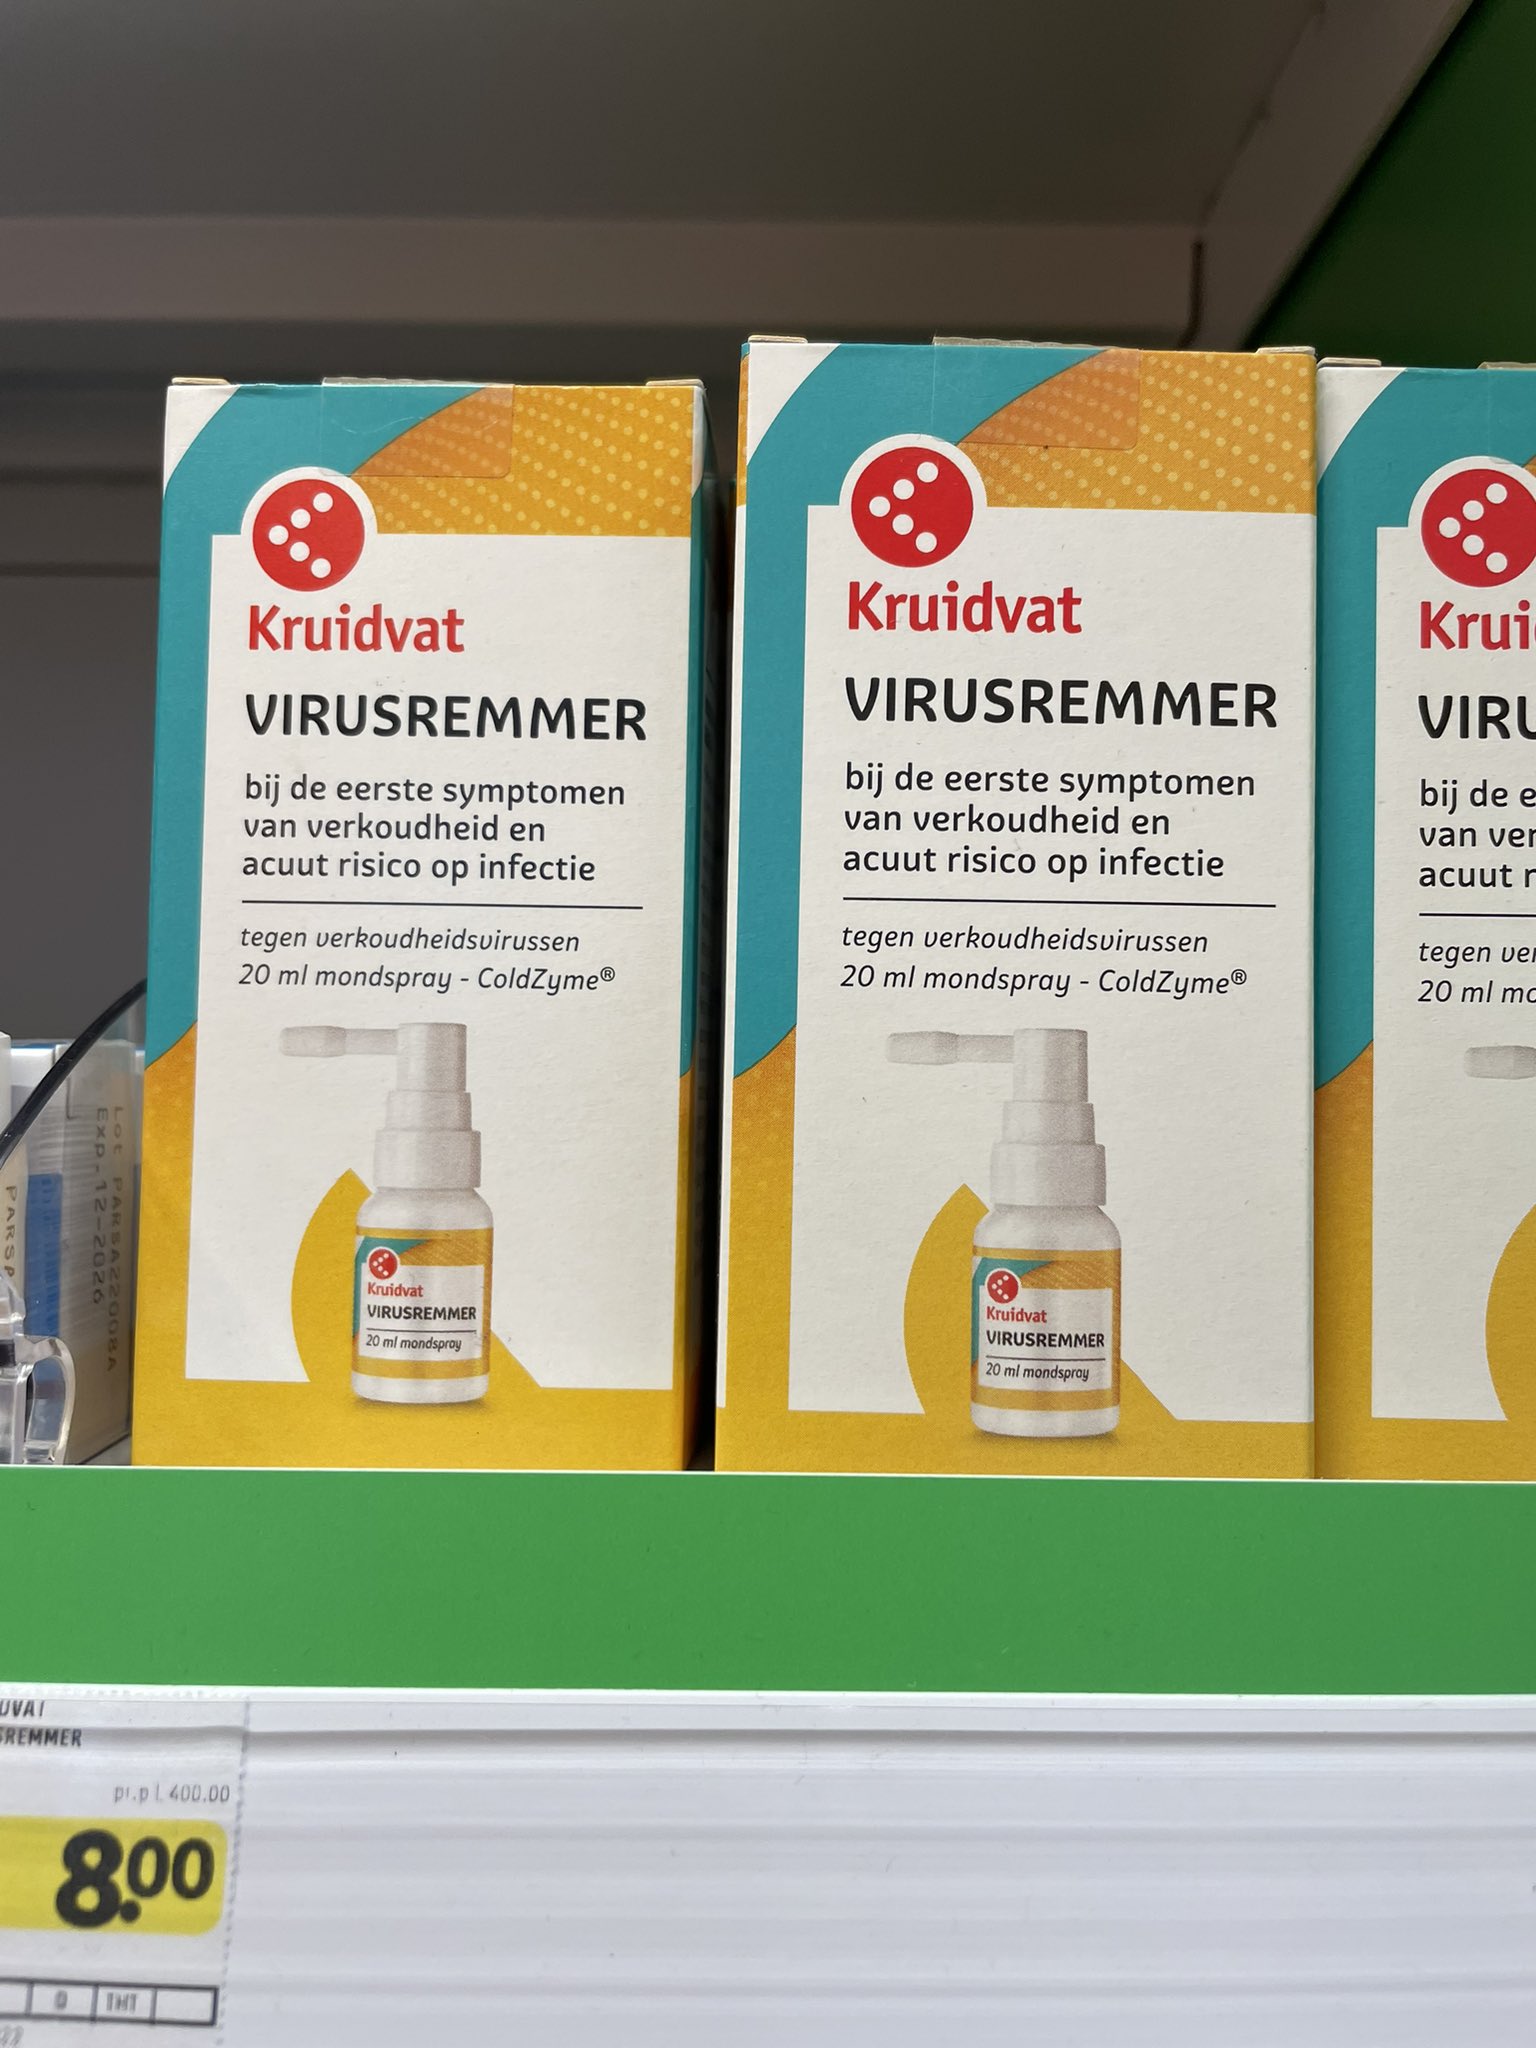 Suzan Pas on Twitter: "Tot mijn verbazing zie ik een #virusremmer bij het # kruidvat koop?! trap hier niet in, grootste onzin voor 8 euro😡! Schandalig dat dit toegestaan is #boerenbedrog.